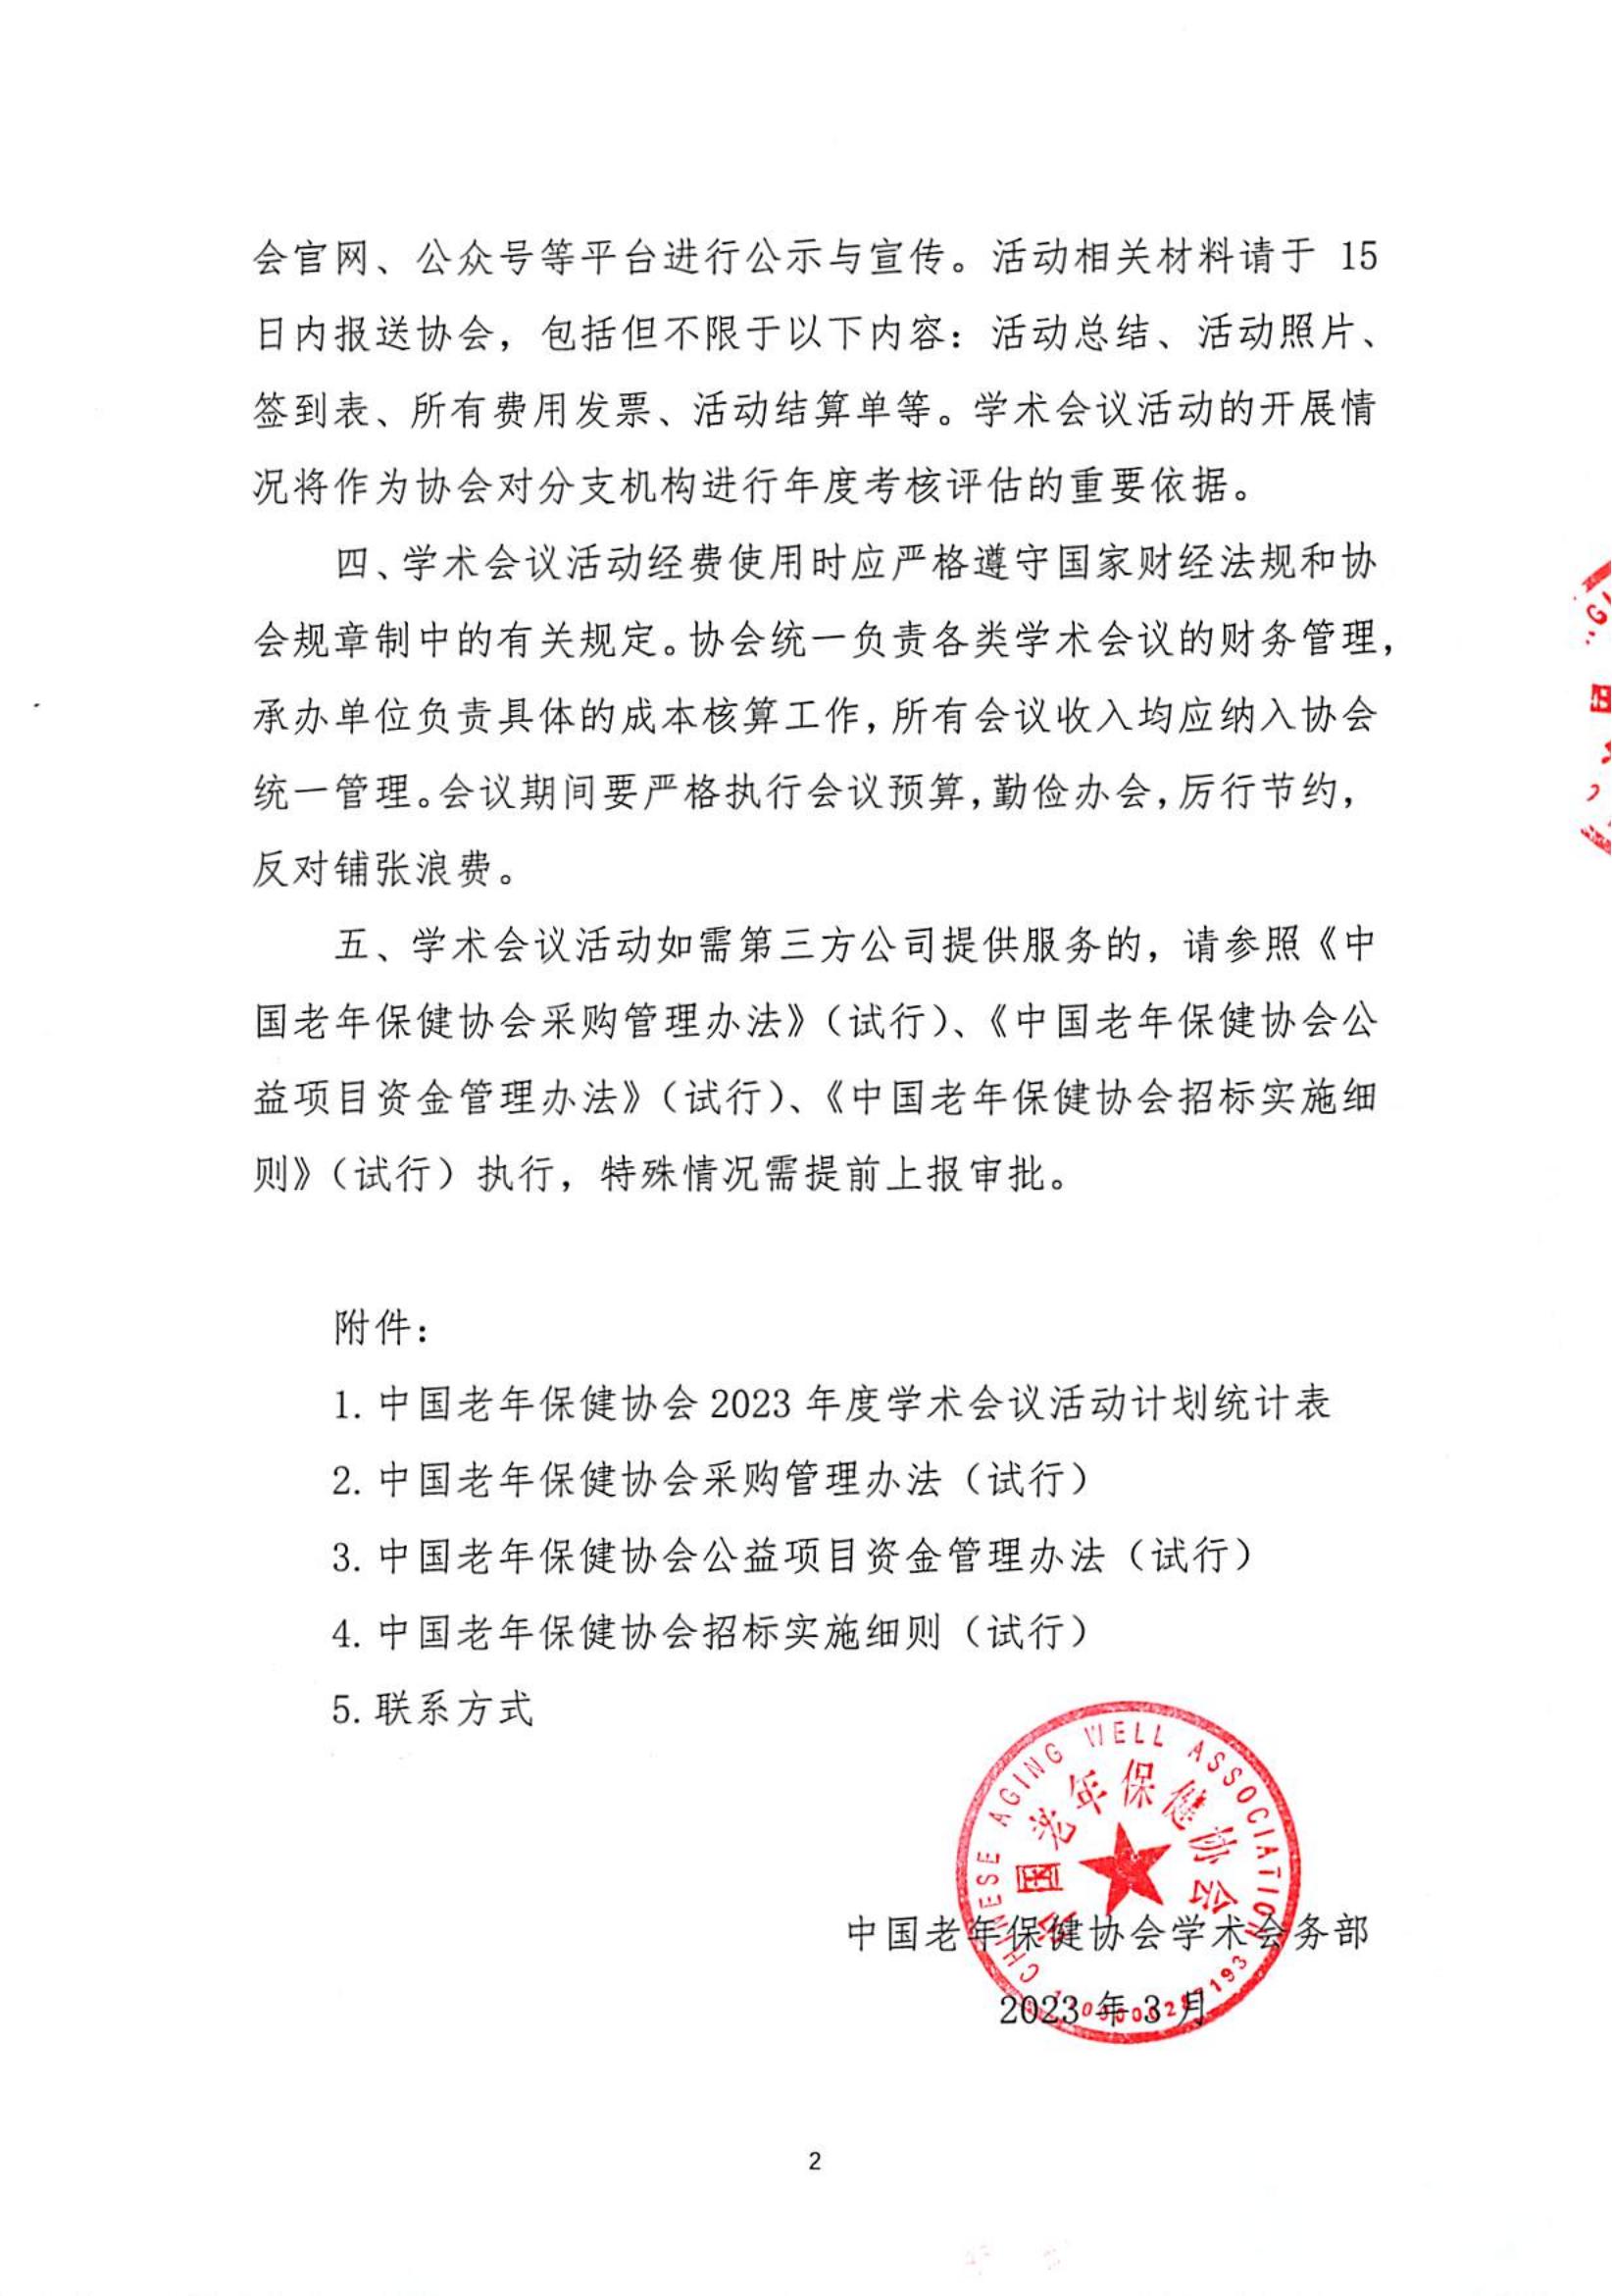 中国老年保健协会关于公布2023年度学术会议活动计划的通知(2)_01.jpg